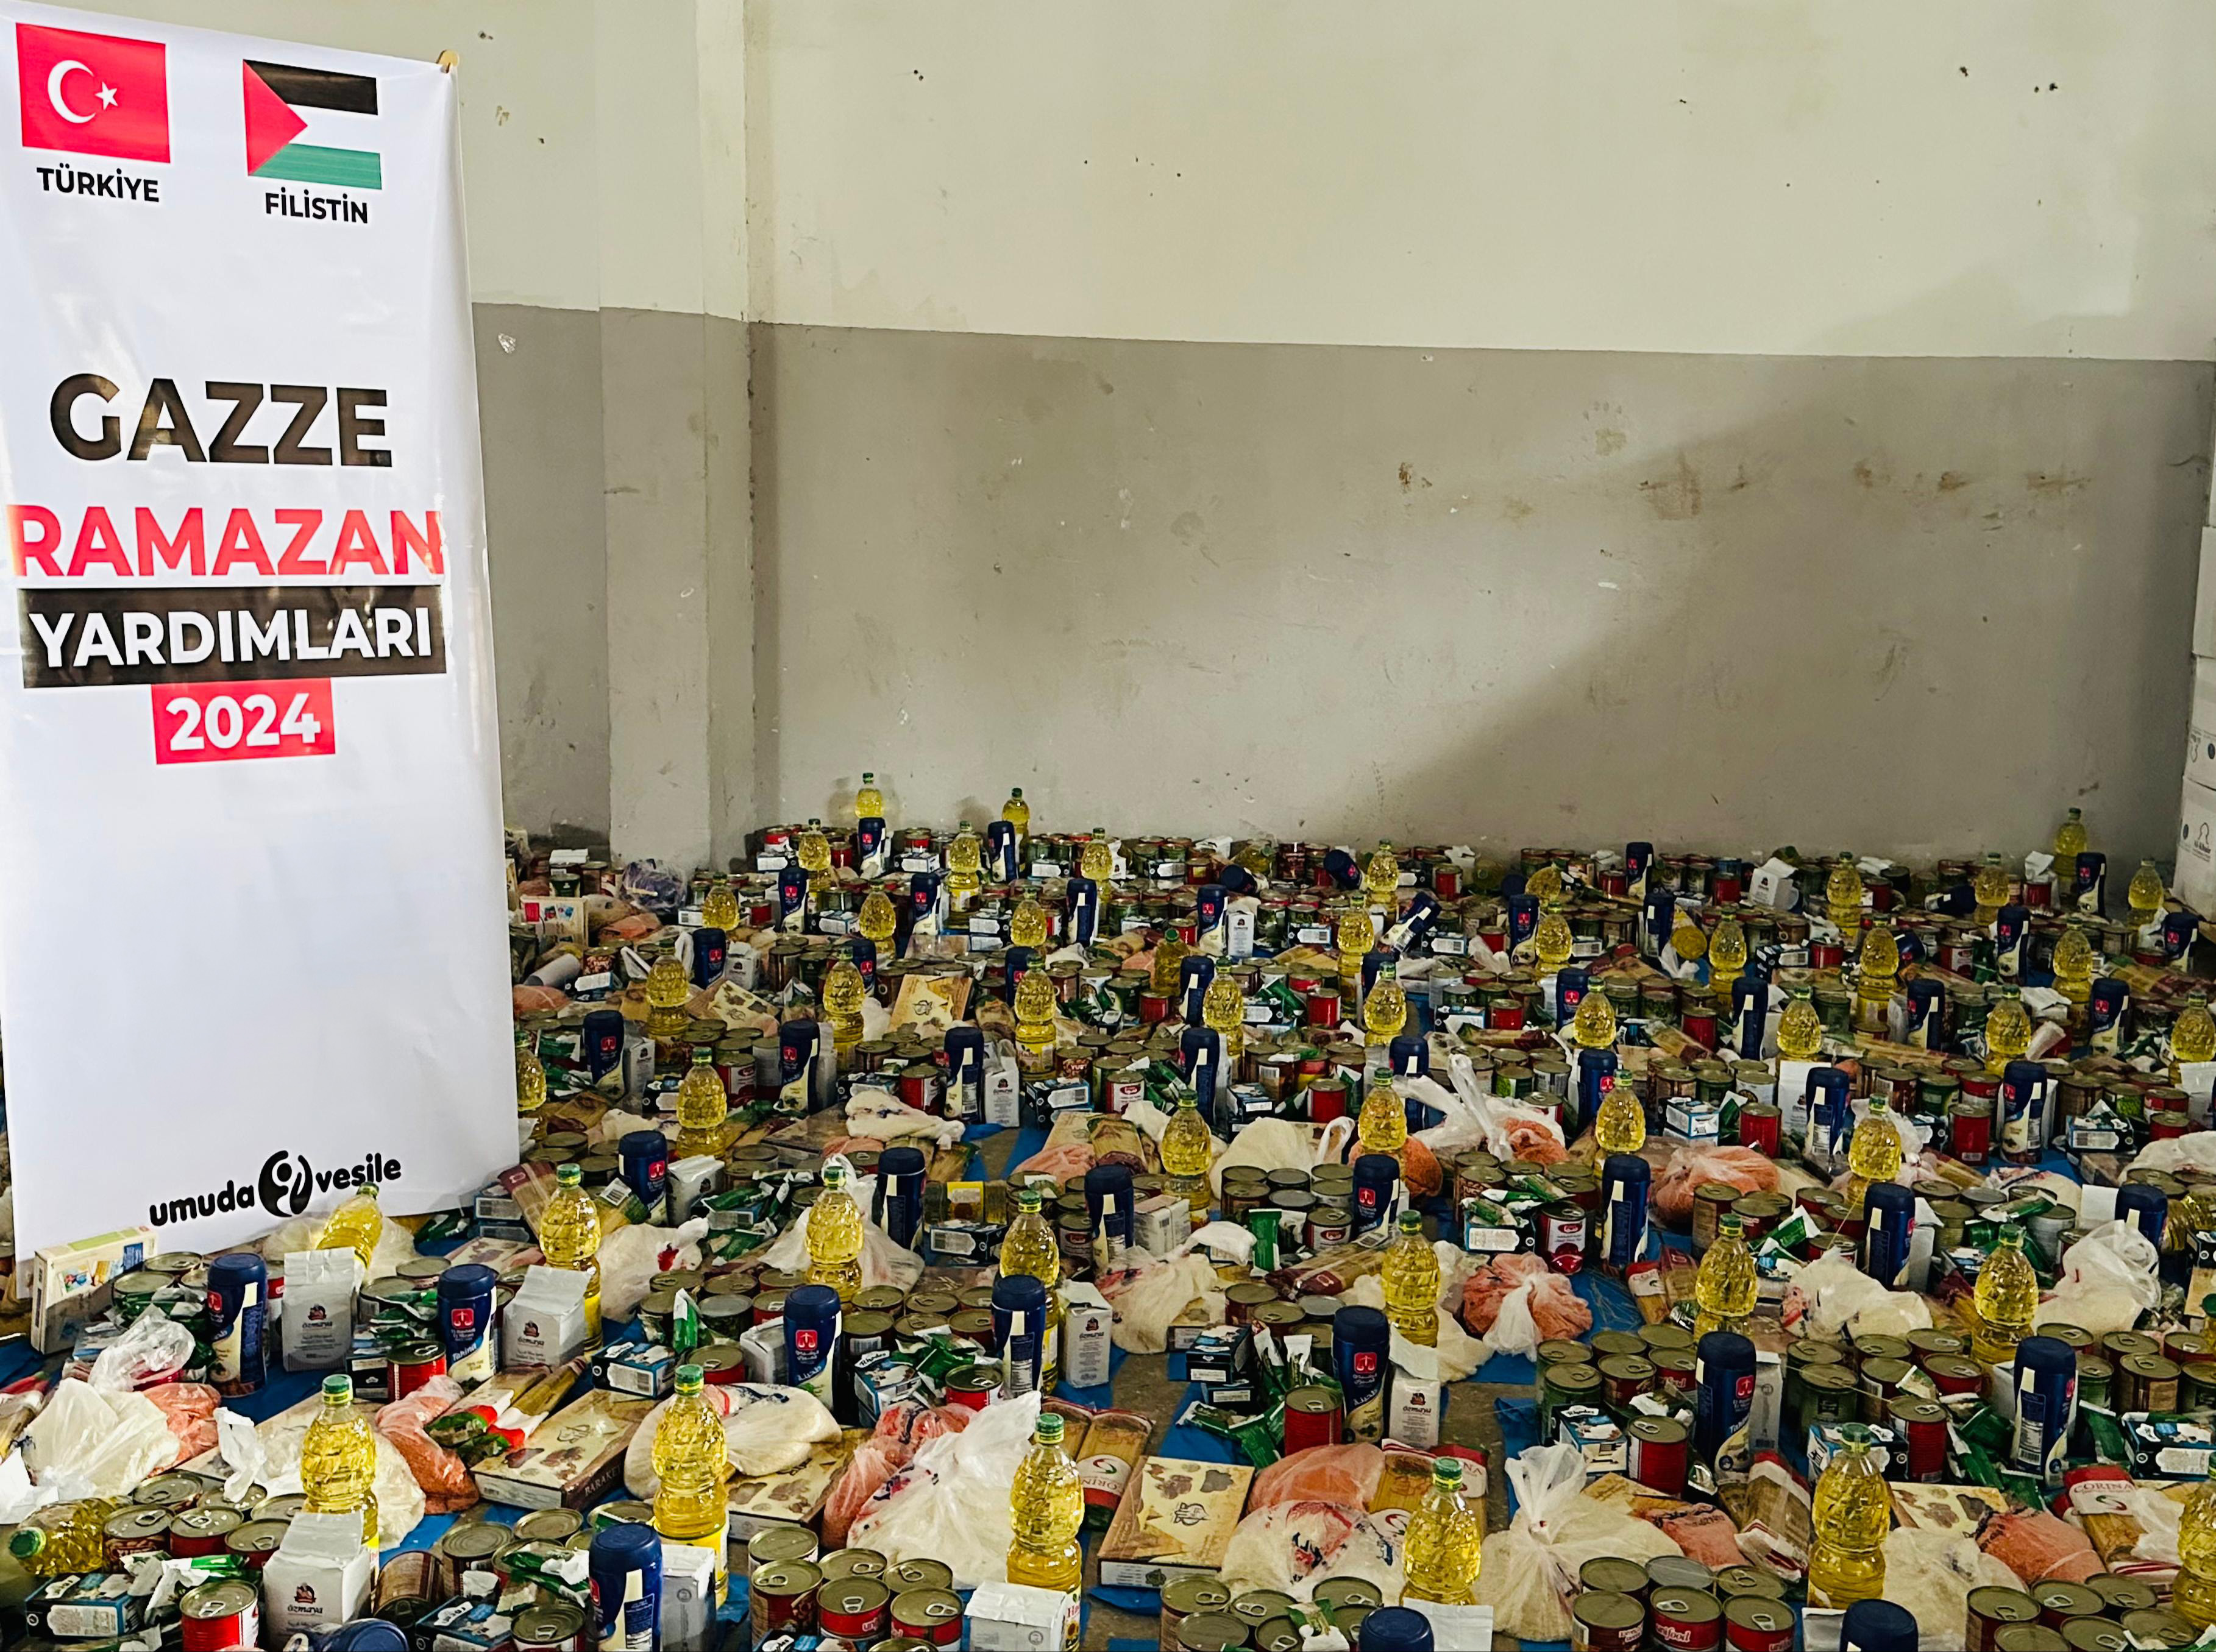 Gazze Refah - Ramazan Yardımları